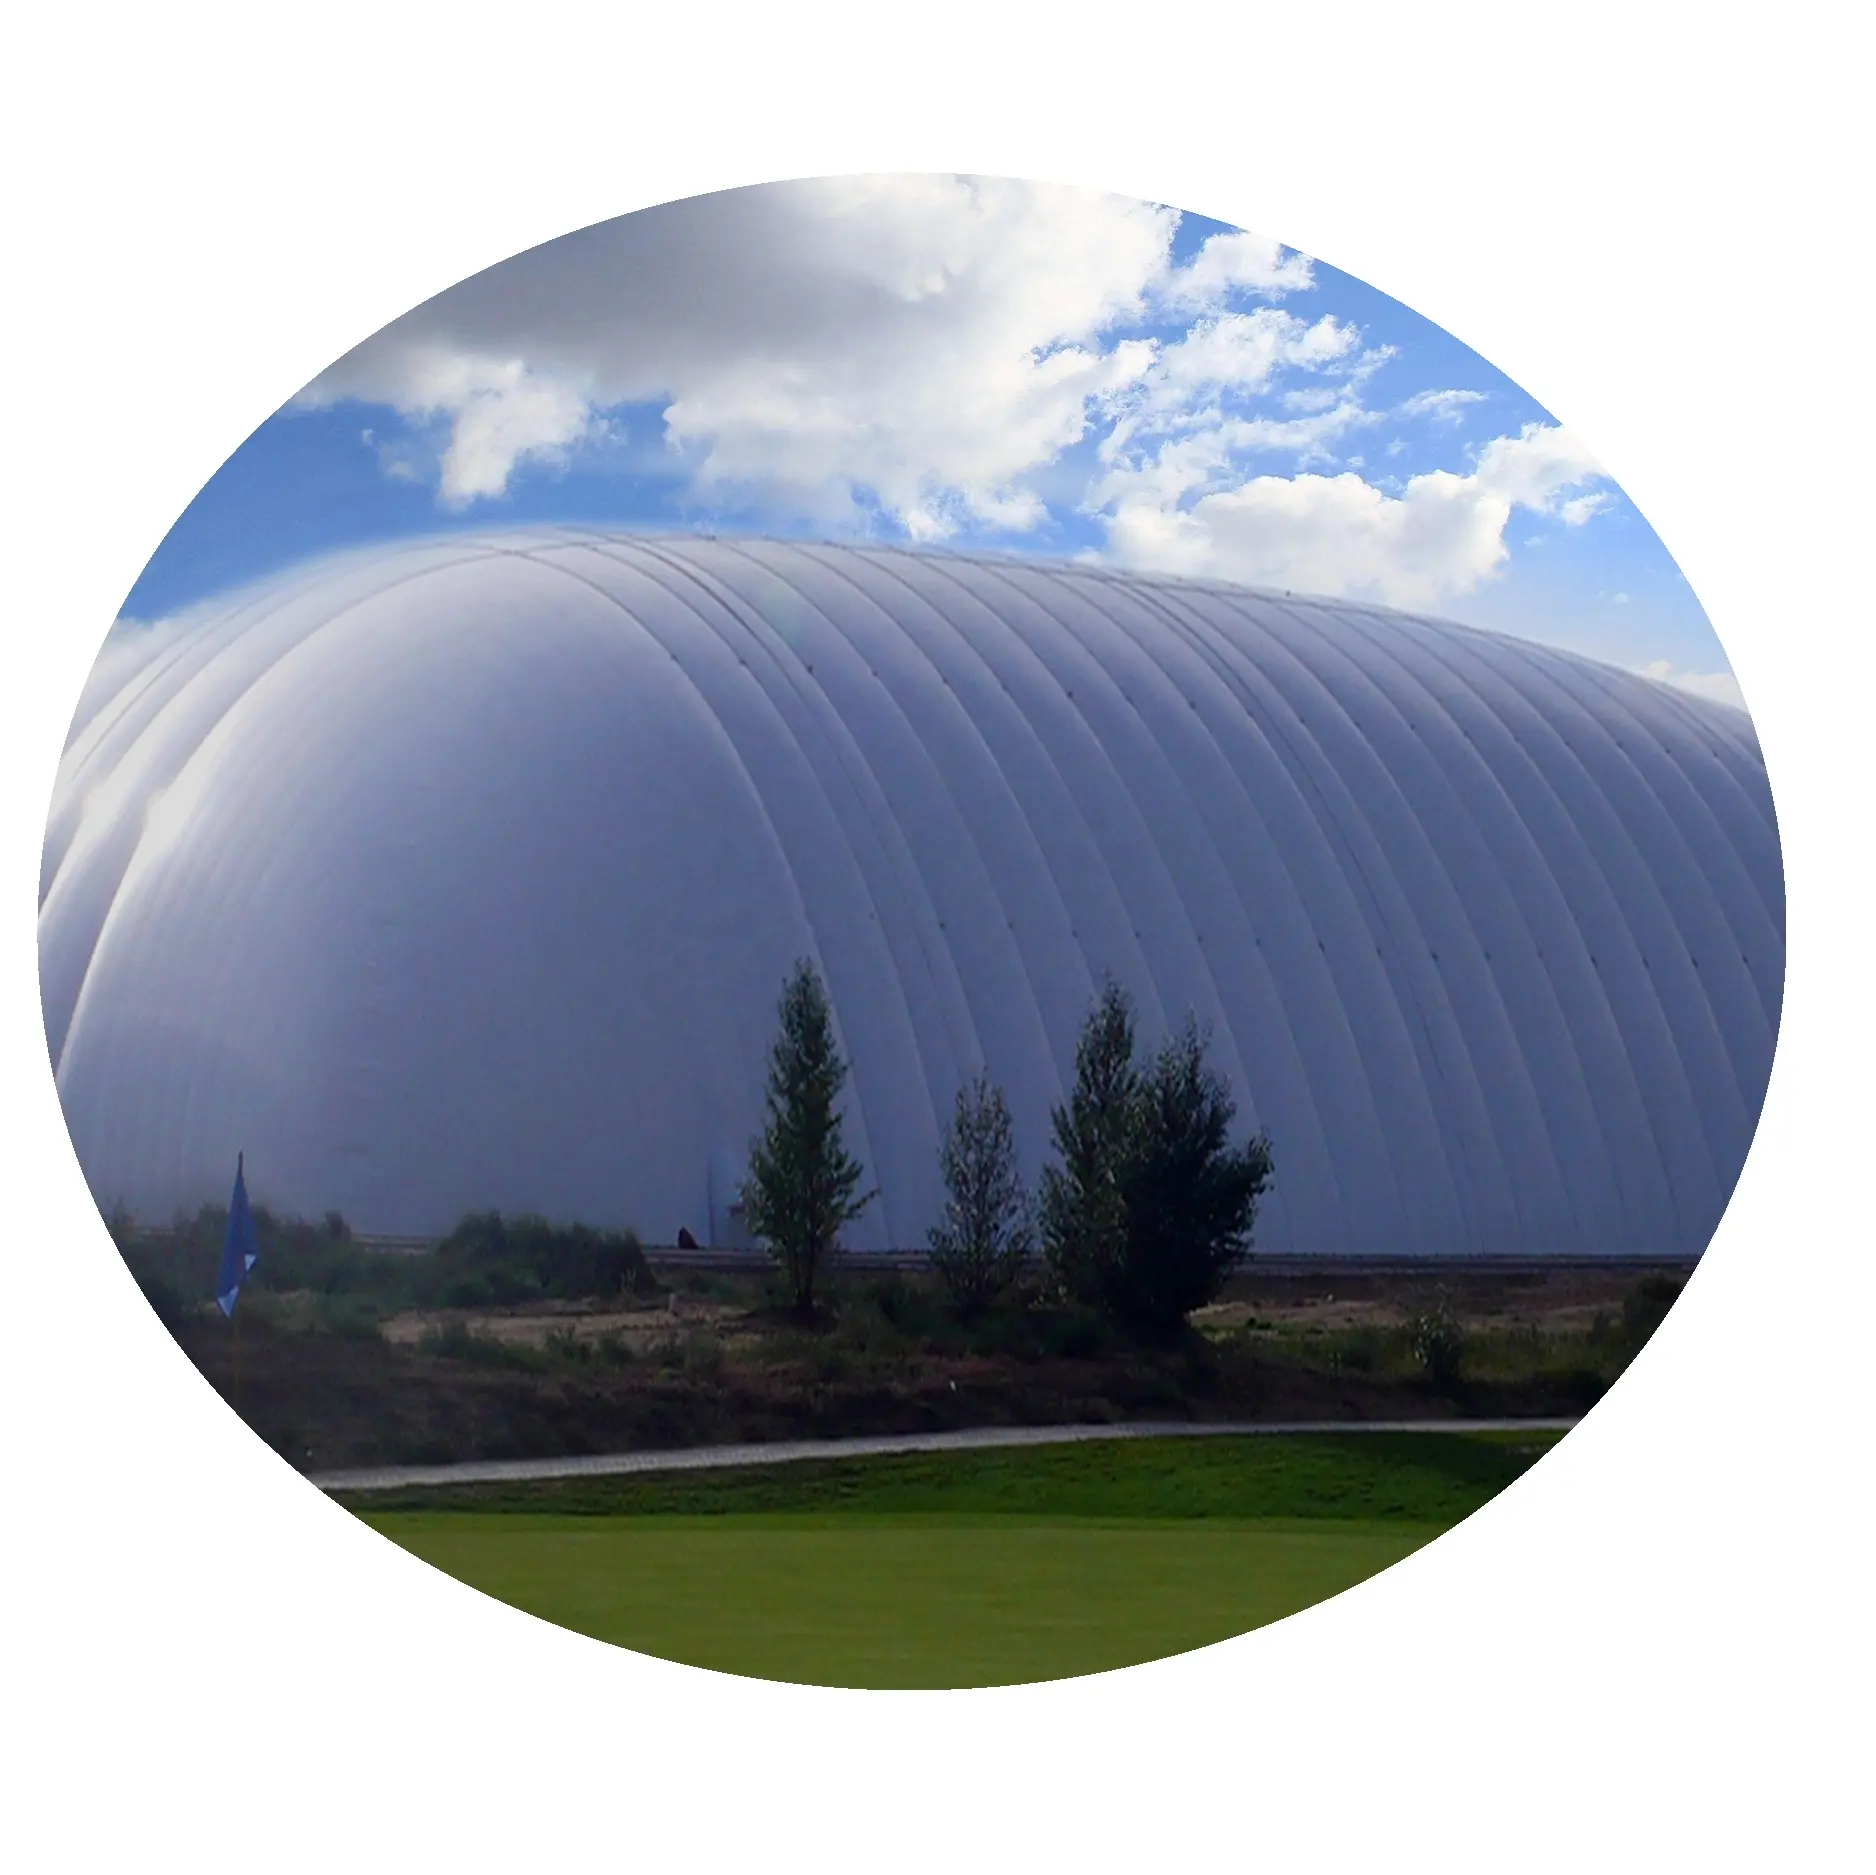 Cortina de tênis ao ar livre perfil de alumínio barraca esportes do telhado escudo membrana estrutura